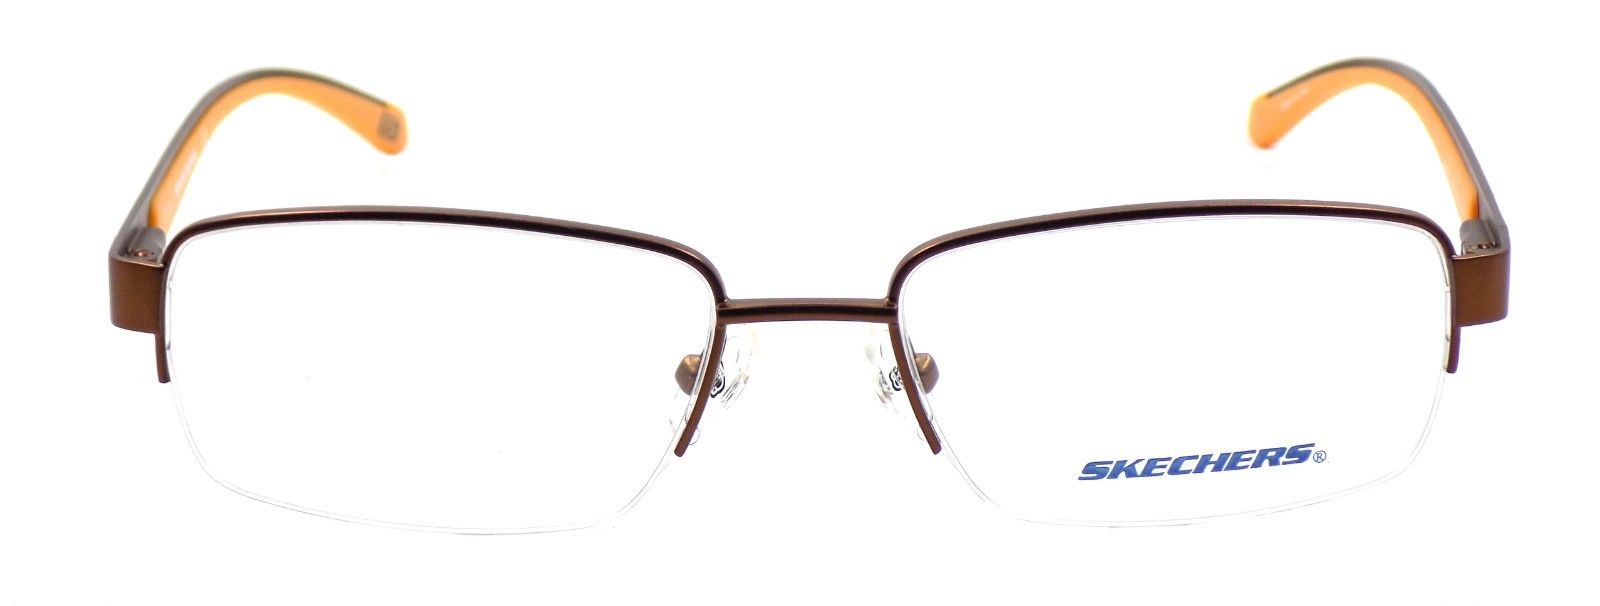 2-SKECHERS SE3170 049 Men's Eyeglasses Frames 53-17-140 Matte Brown / Orange +CASE-664689740765-IKSpecs